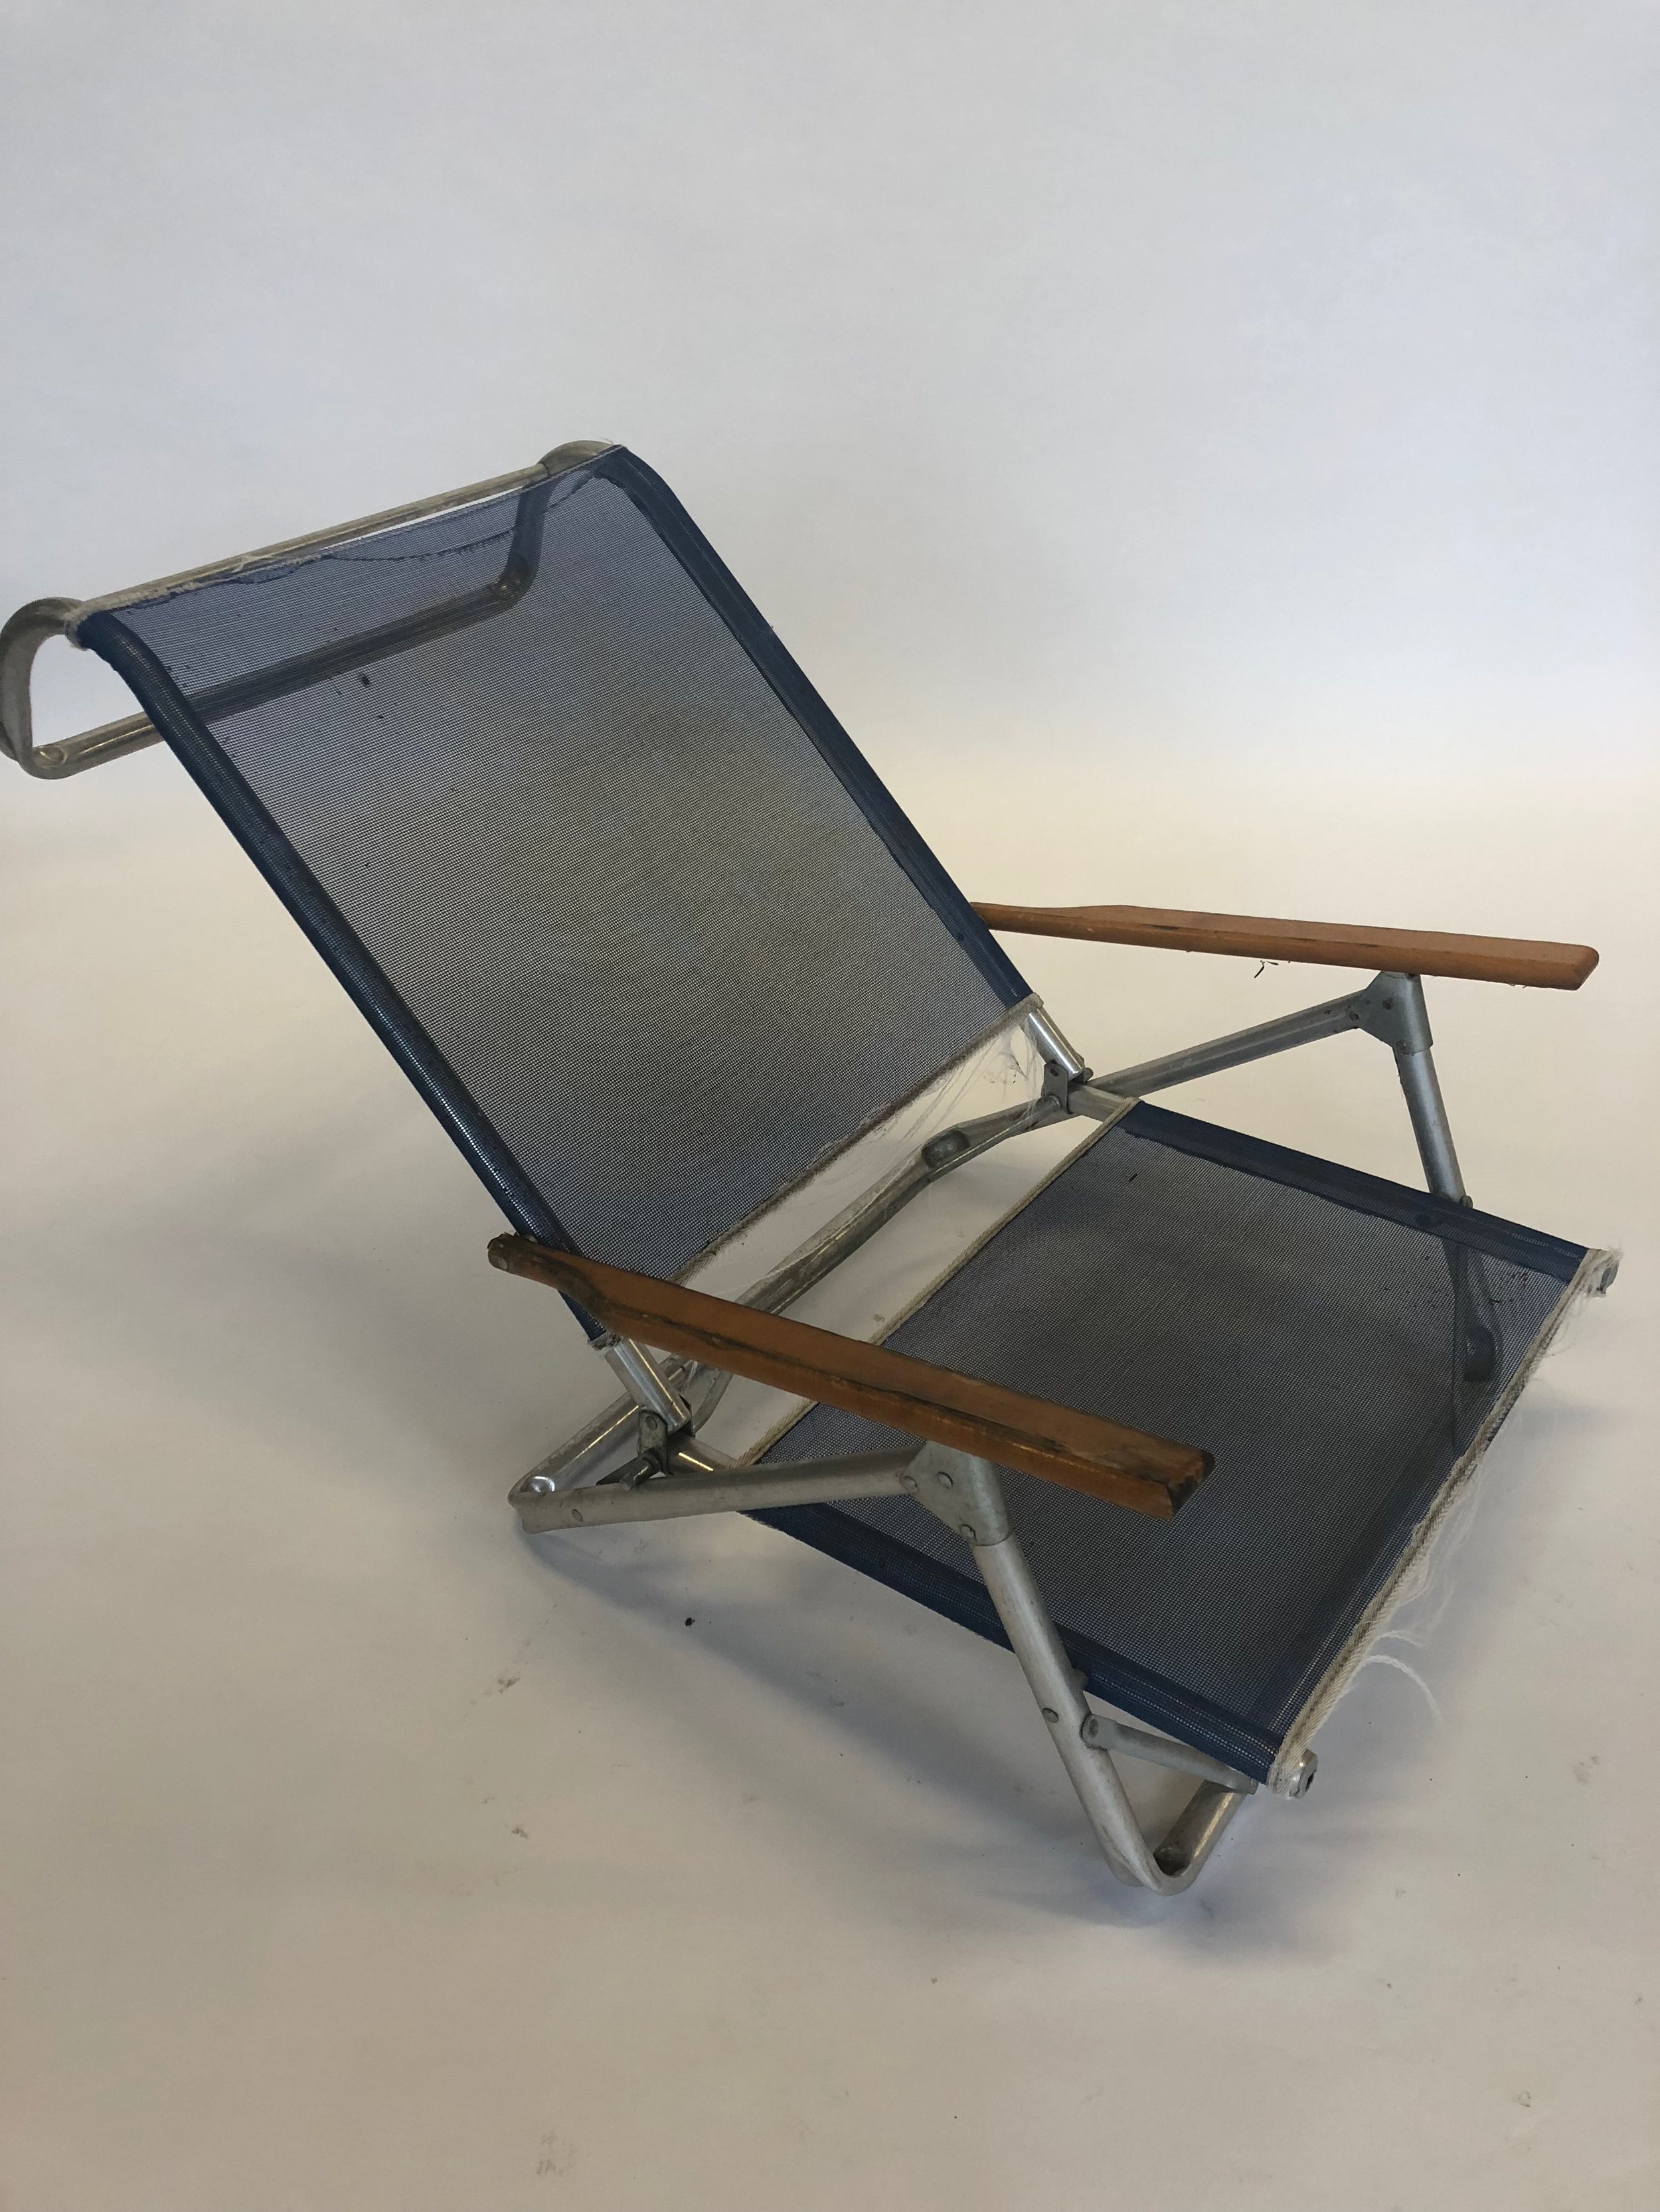 mesh beach chair